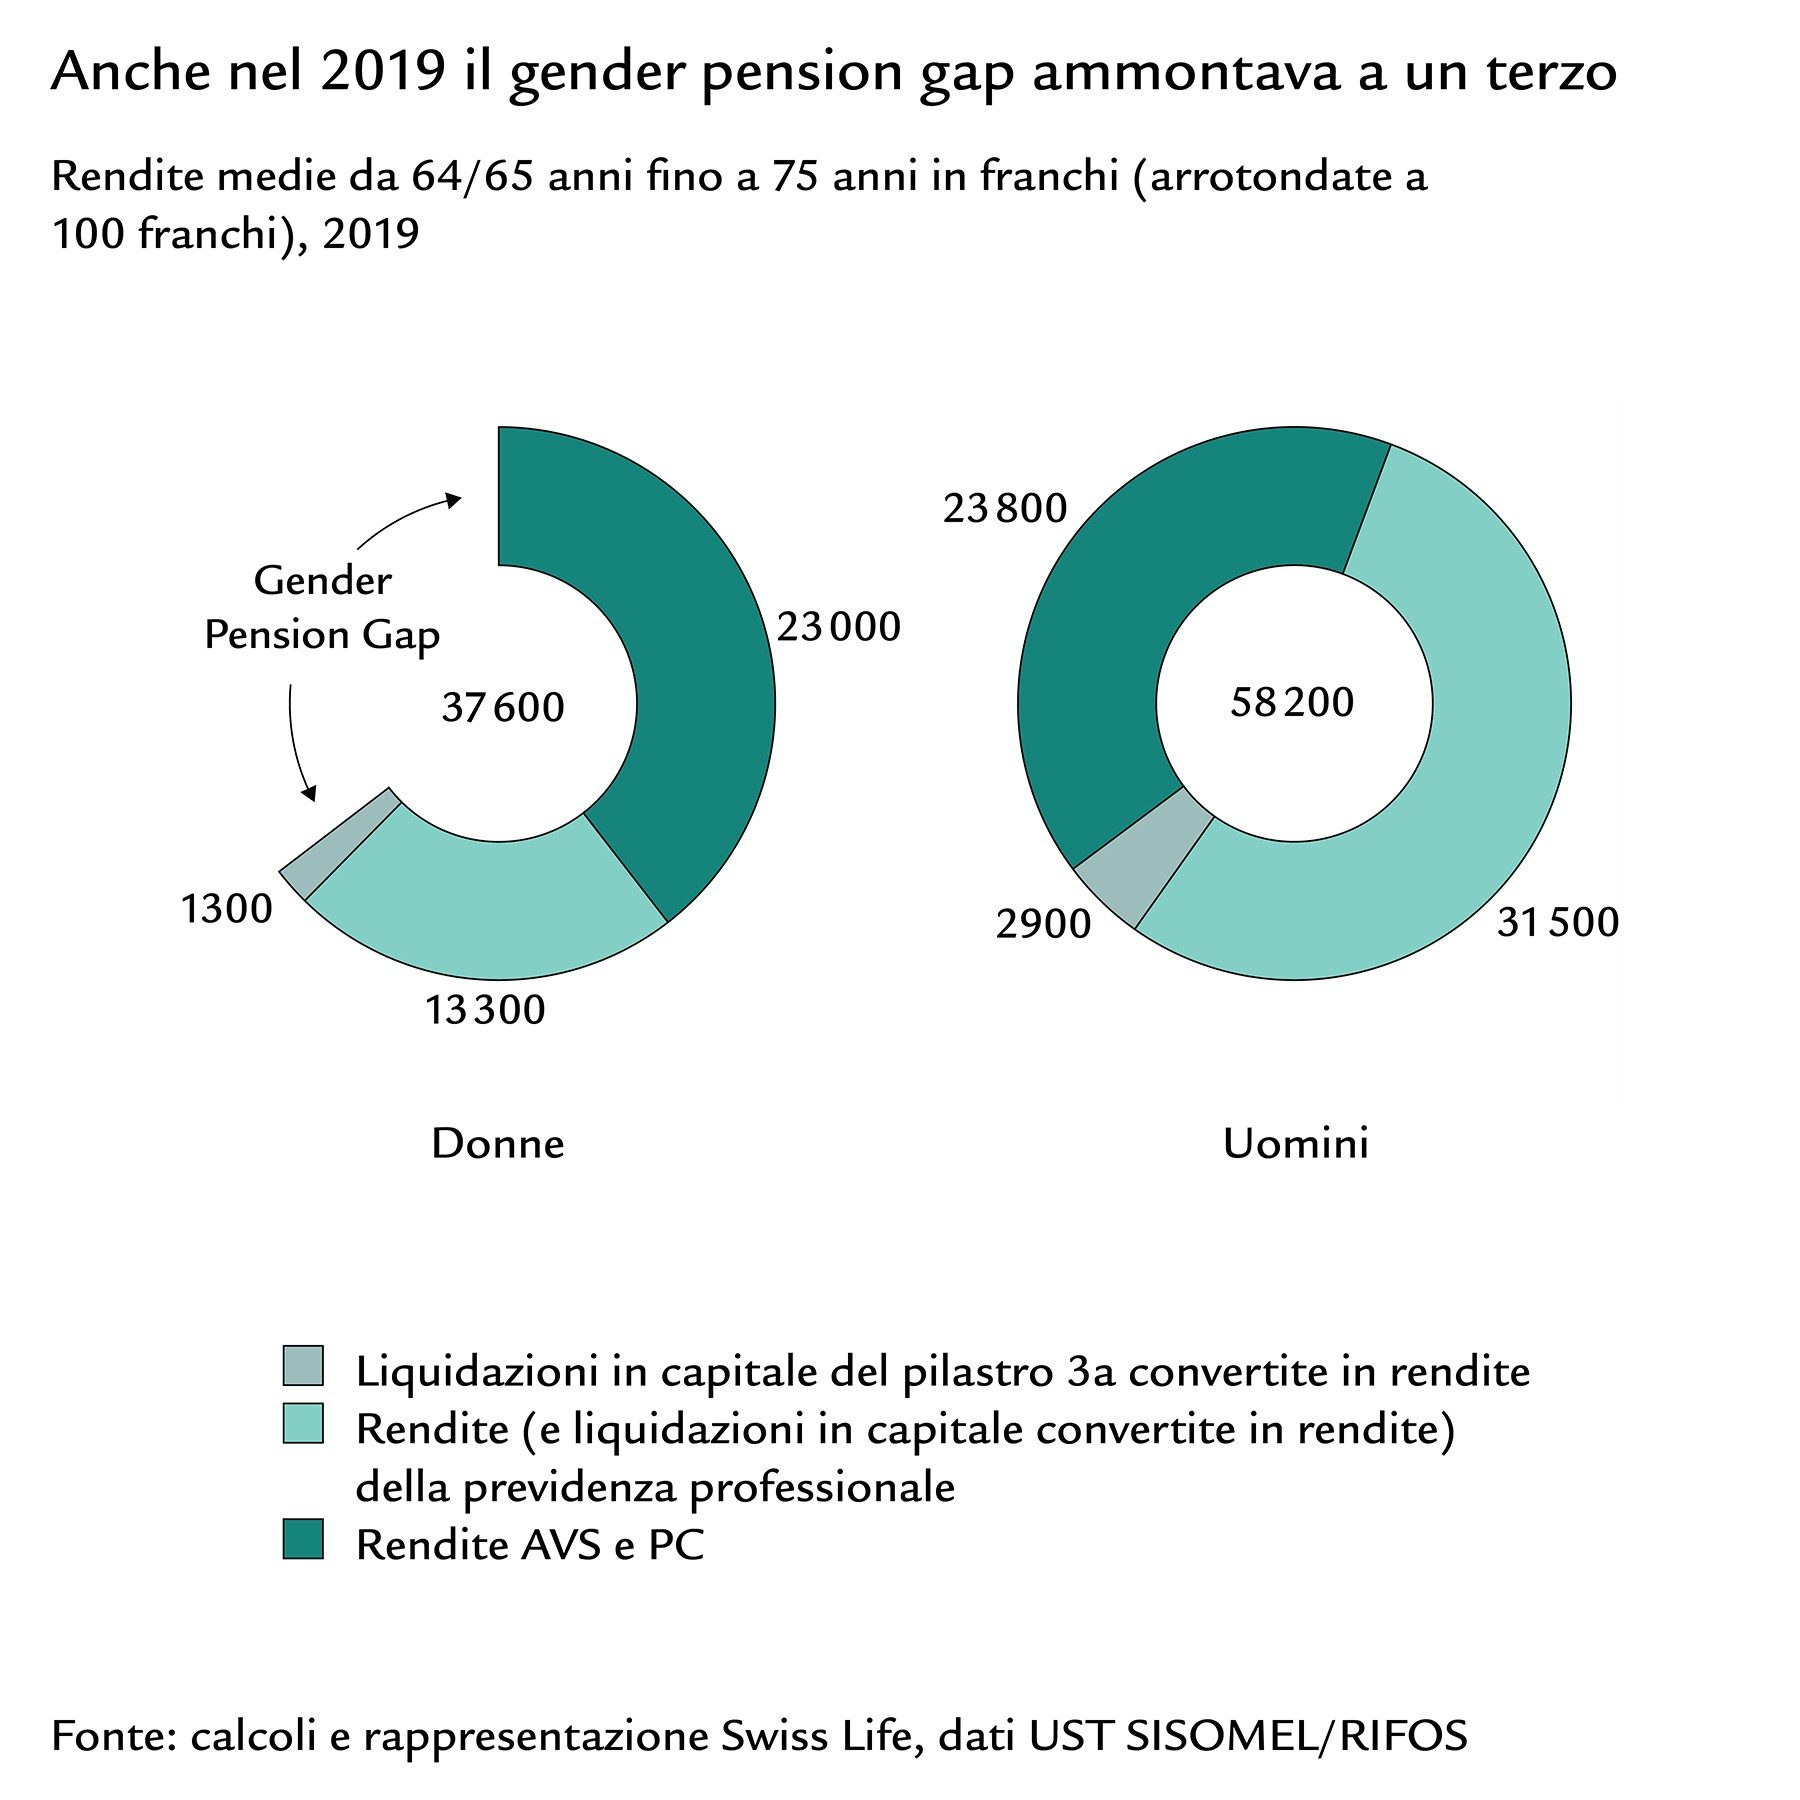 Diagrammi a torta del gender pension gap con le rendite medie di donne e uomini, 2019